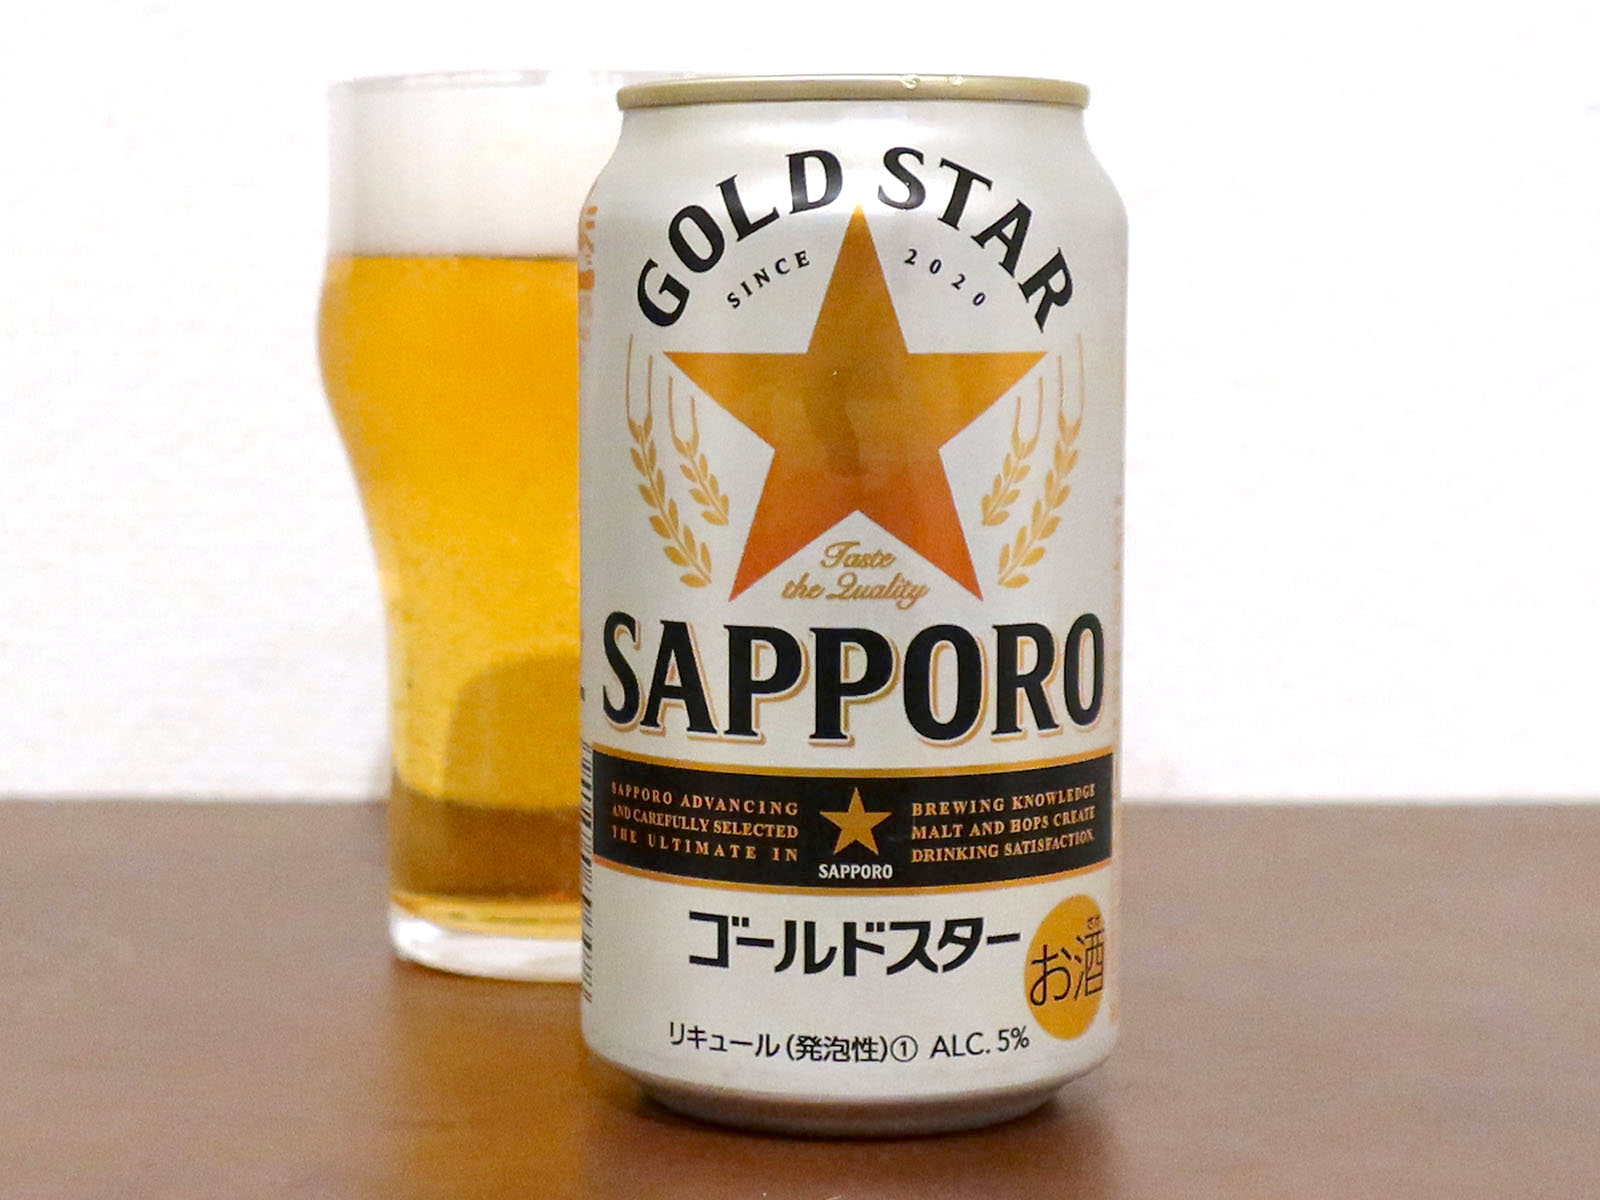 サッポロビール SAPPORO GOLD STAR